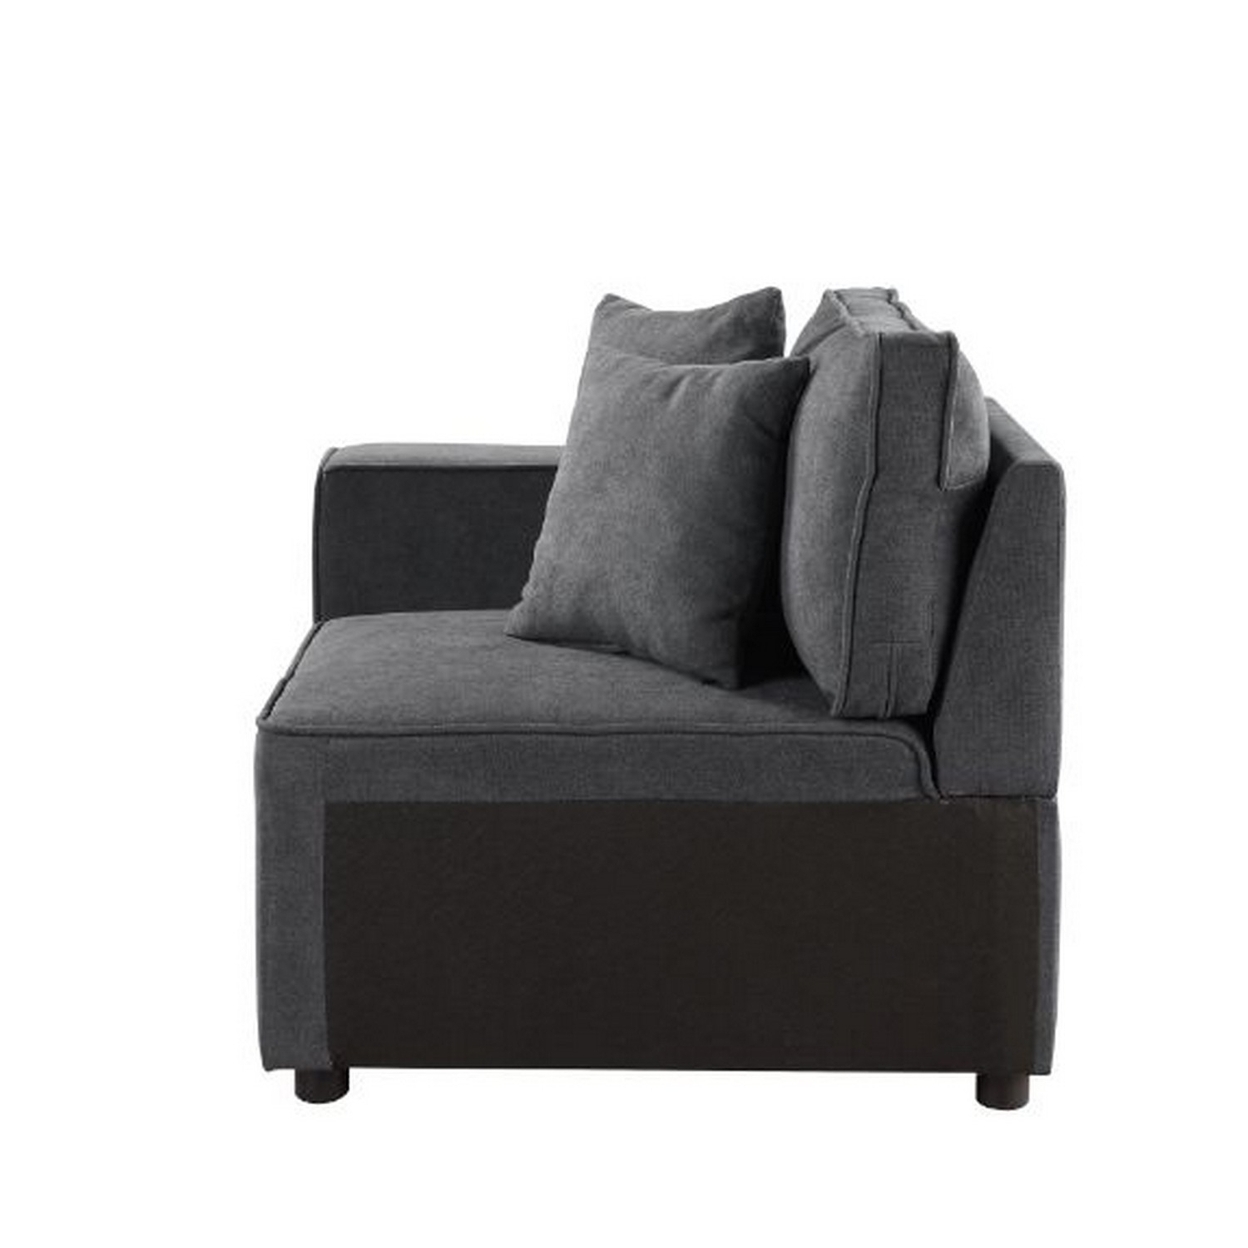 Modular Left Facing Chair With Loose Back Pillow, Gray- Saltoro Sherpi